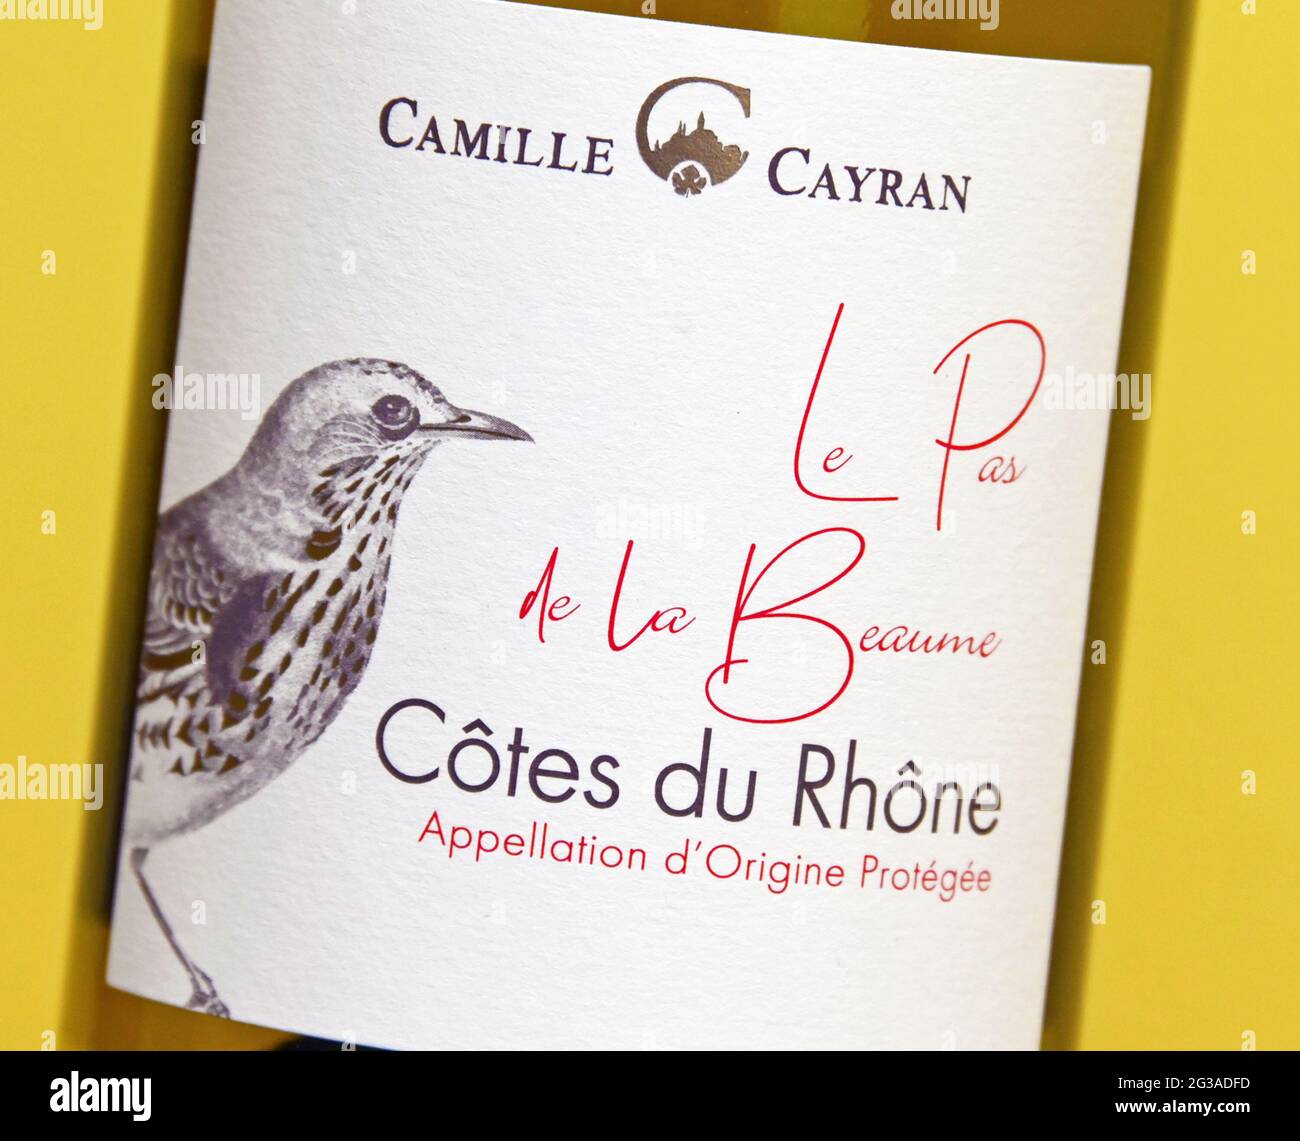 Wine label. Camille Cayran. Le Pas de la Beaume. Cotes du Rhone. Appellation d'Origine Protegee. Stock Photo